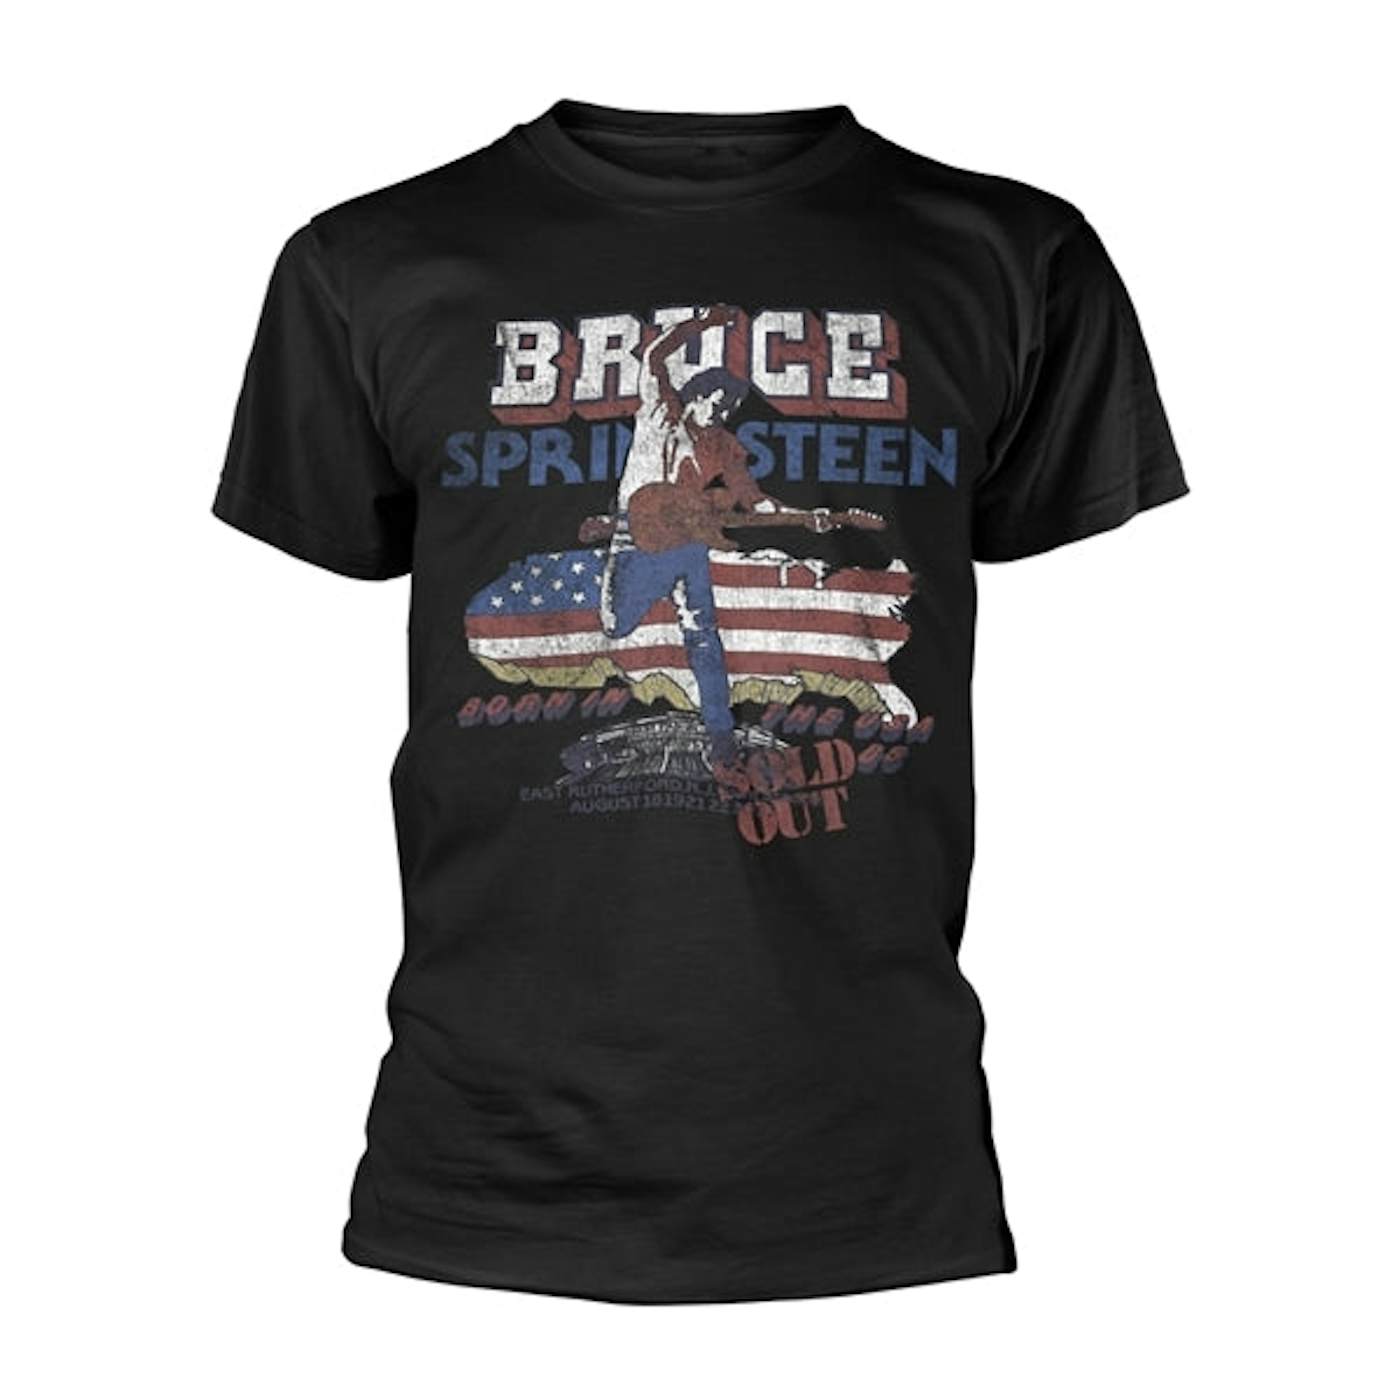 Bruce Springsteen T Shirt - Tour '84-'85